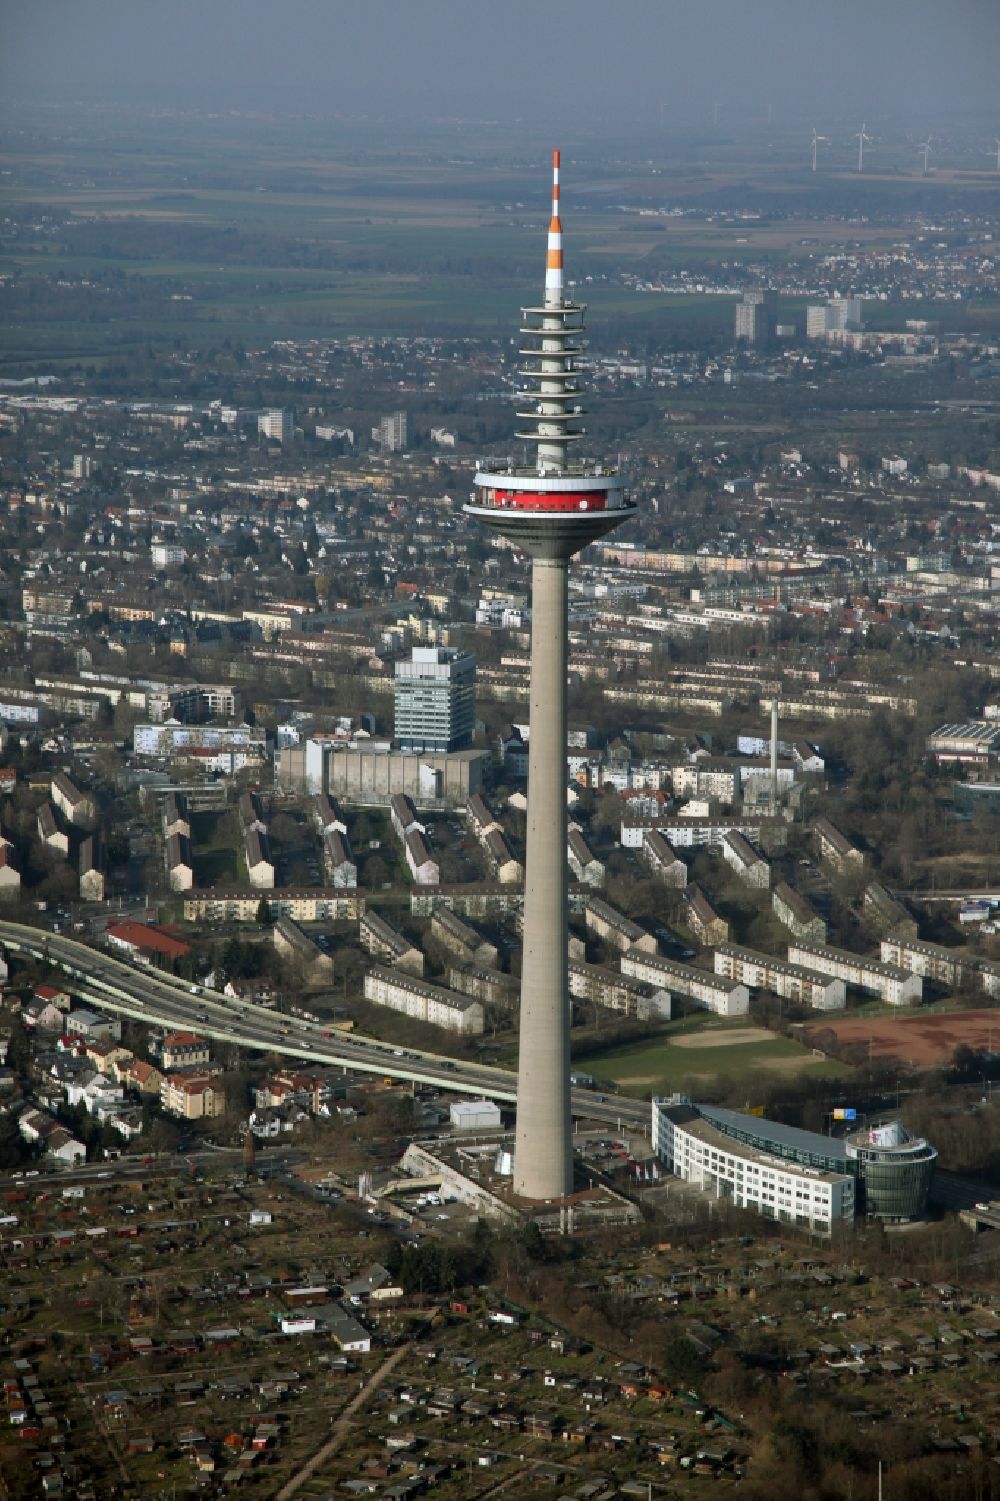 Frankfurt am Main von oben - Europaturm in Frankfurt am Main im Bundesland Hessen, meistens als Fernsehturm bezeichnet